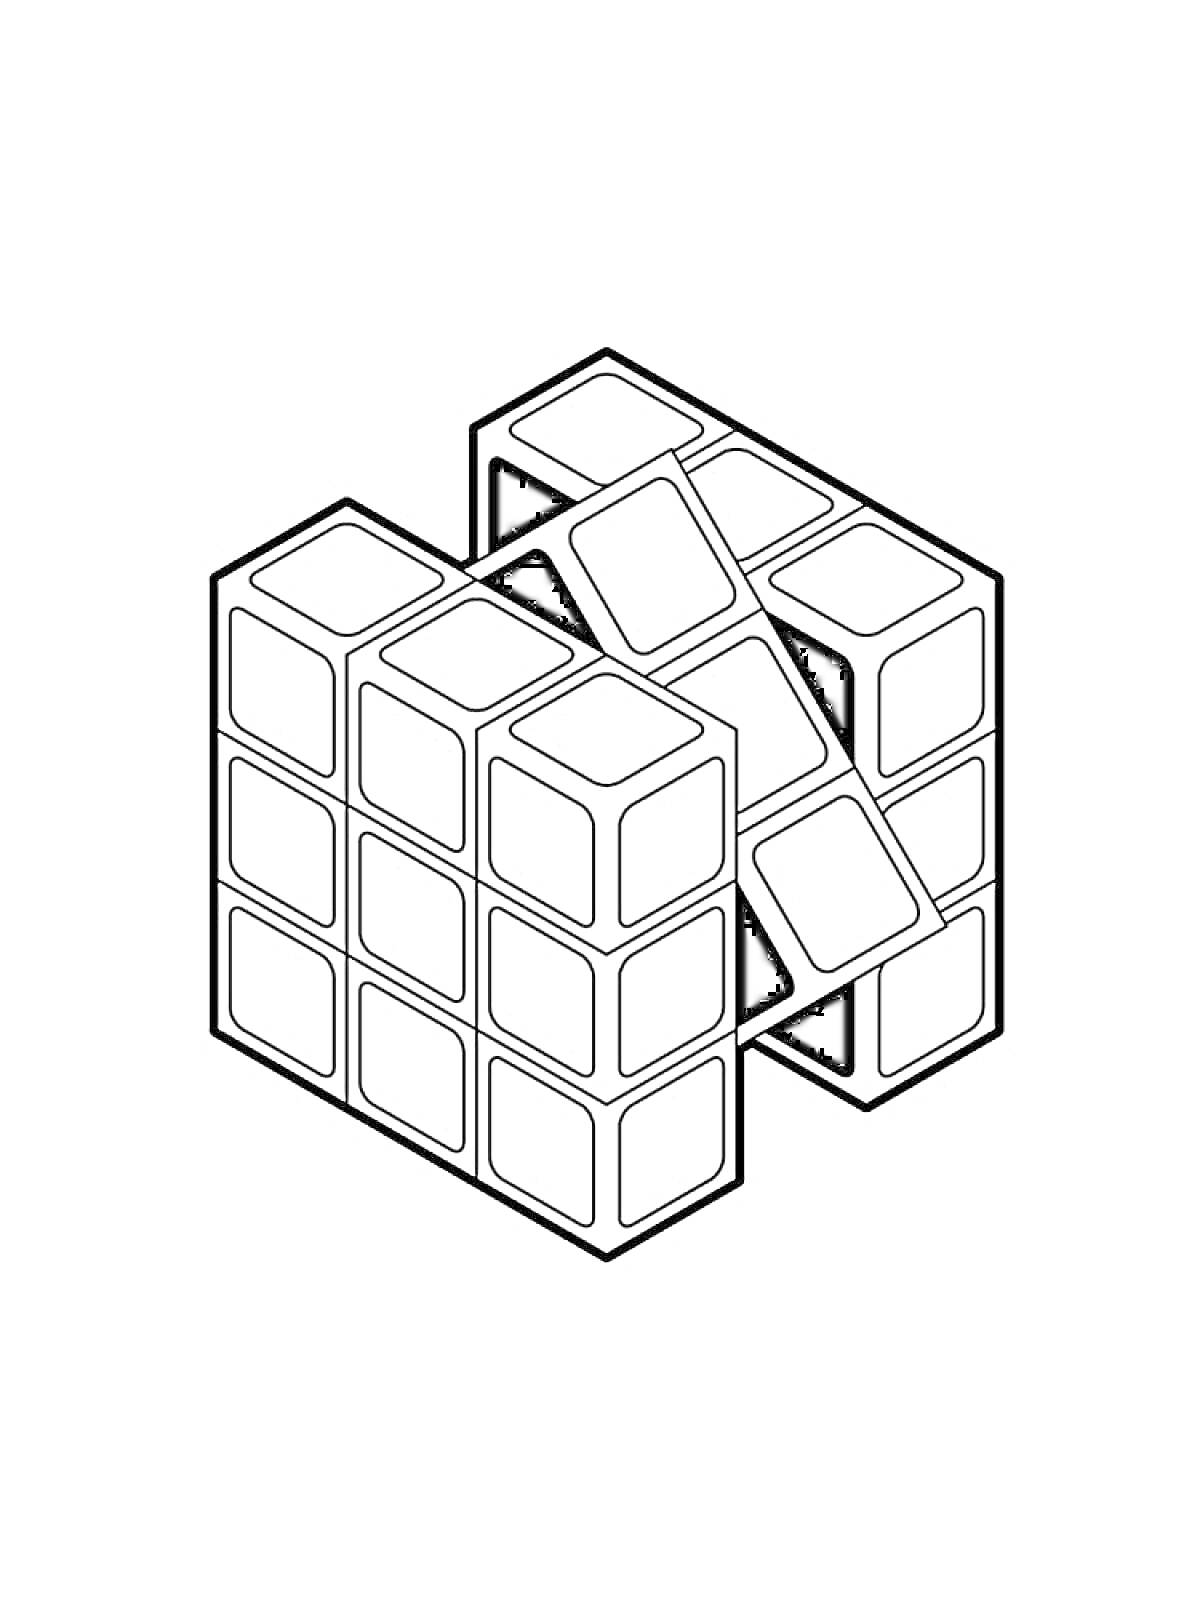 Раскраска Кубик Рубика в разобранном состоянии